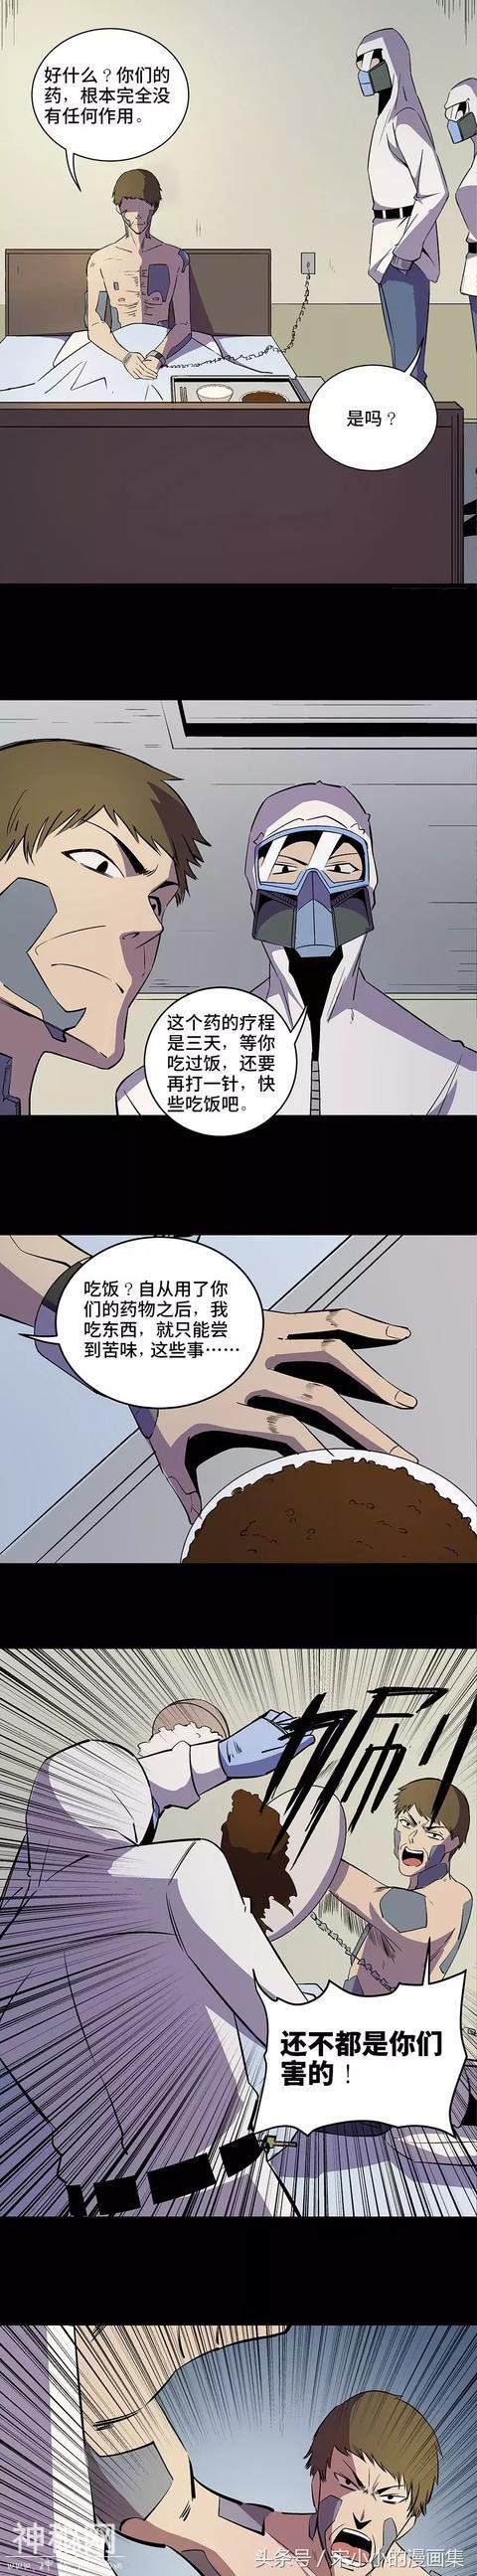 精品漫画《让人变成石头的怪病》-7.jpg